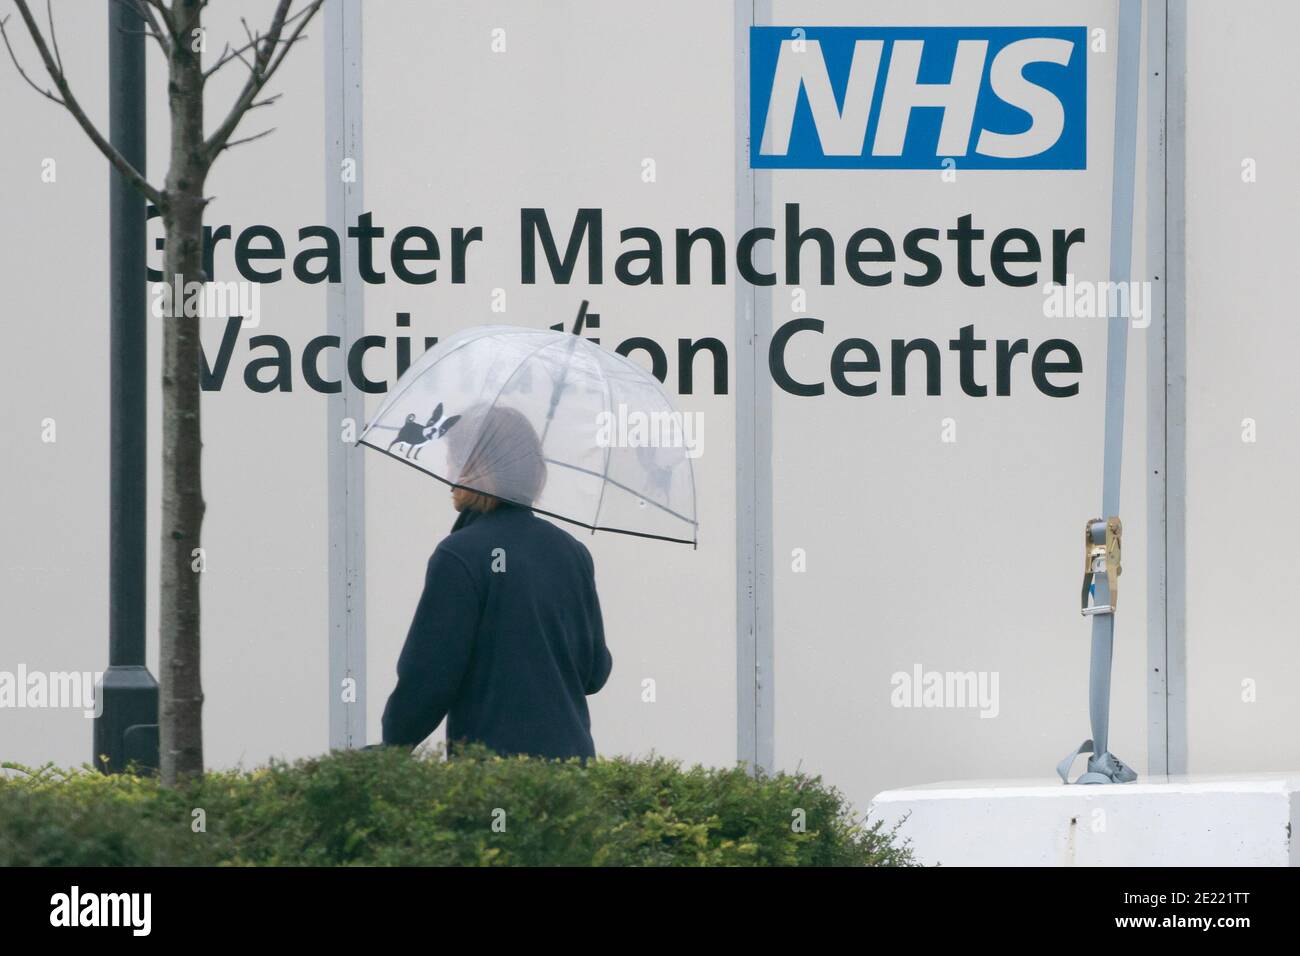 Manchester, Reino Unido, 11 de enero de 2021. Los miembros del público llegan a un centro de vacunación en Manchester, ya que las pruebas masivas a nivel nacional comienzan en 5 centros de todo el país frente al Coronavirus, Manchester, Reino Unido. Foto de stock